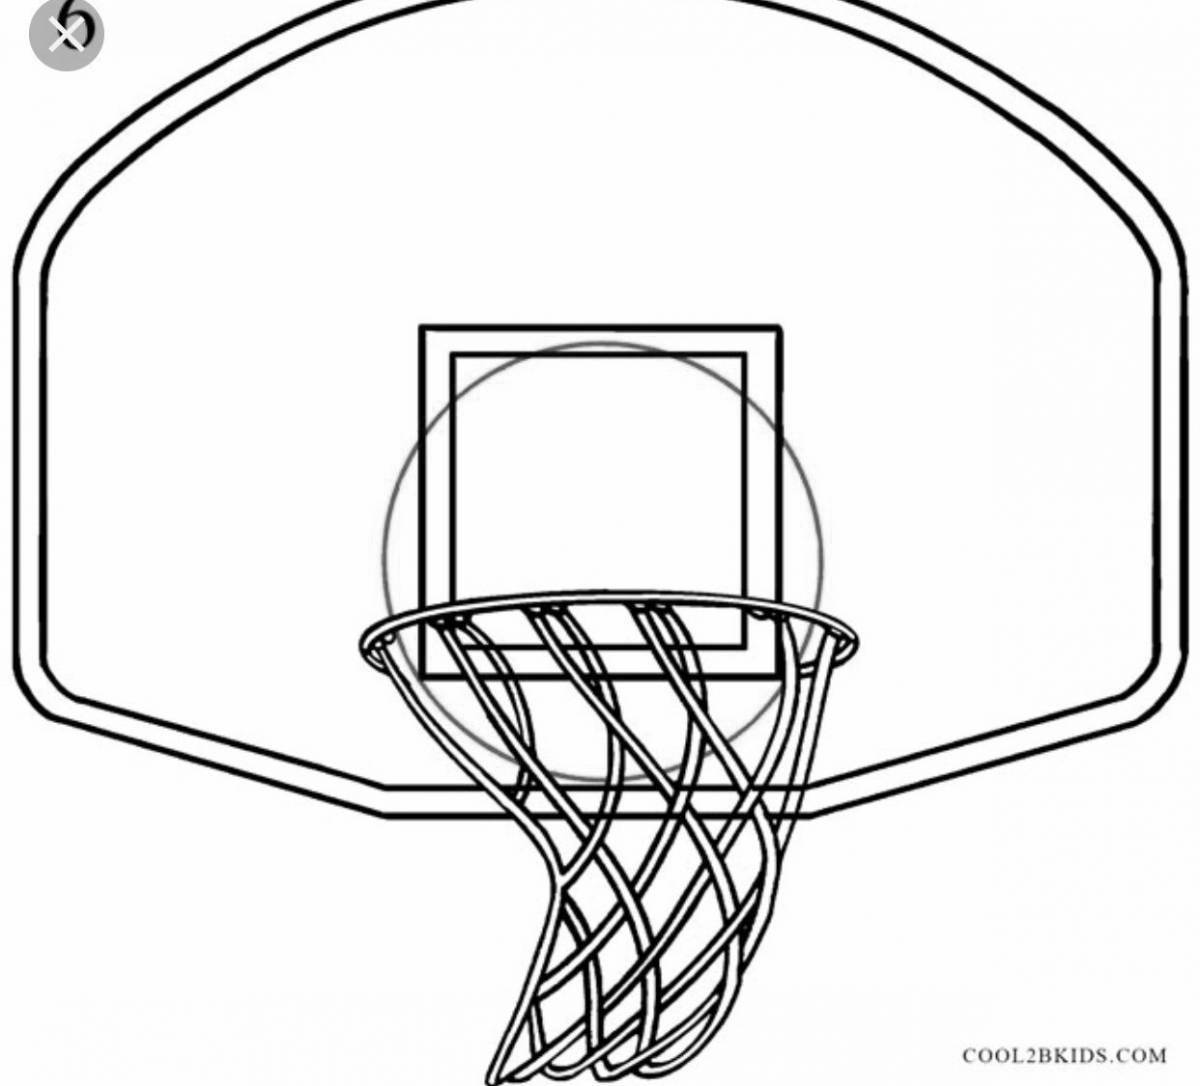 Очаровательная страница раскраски баскетбольного кольца